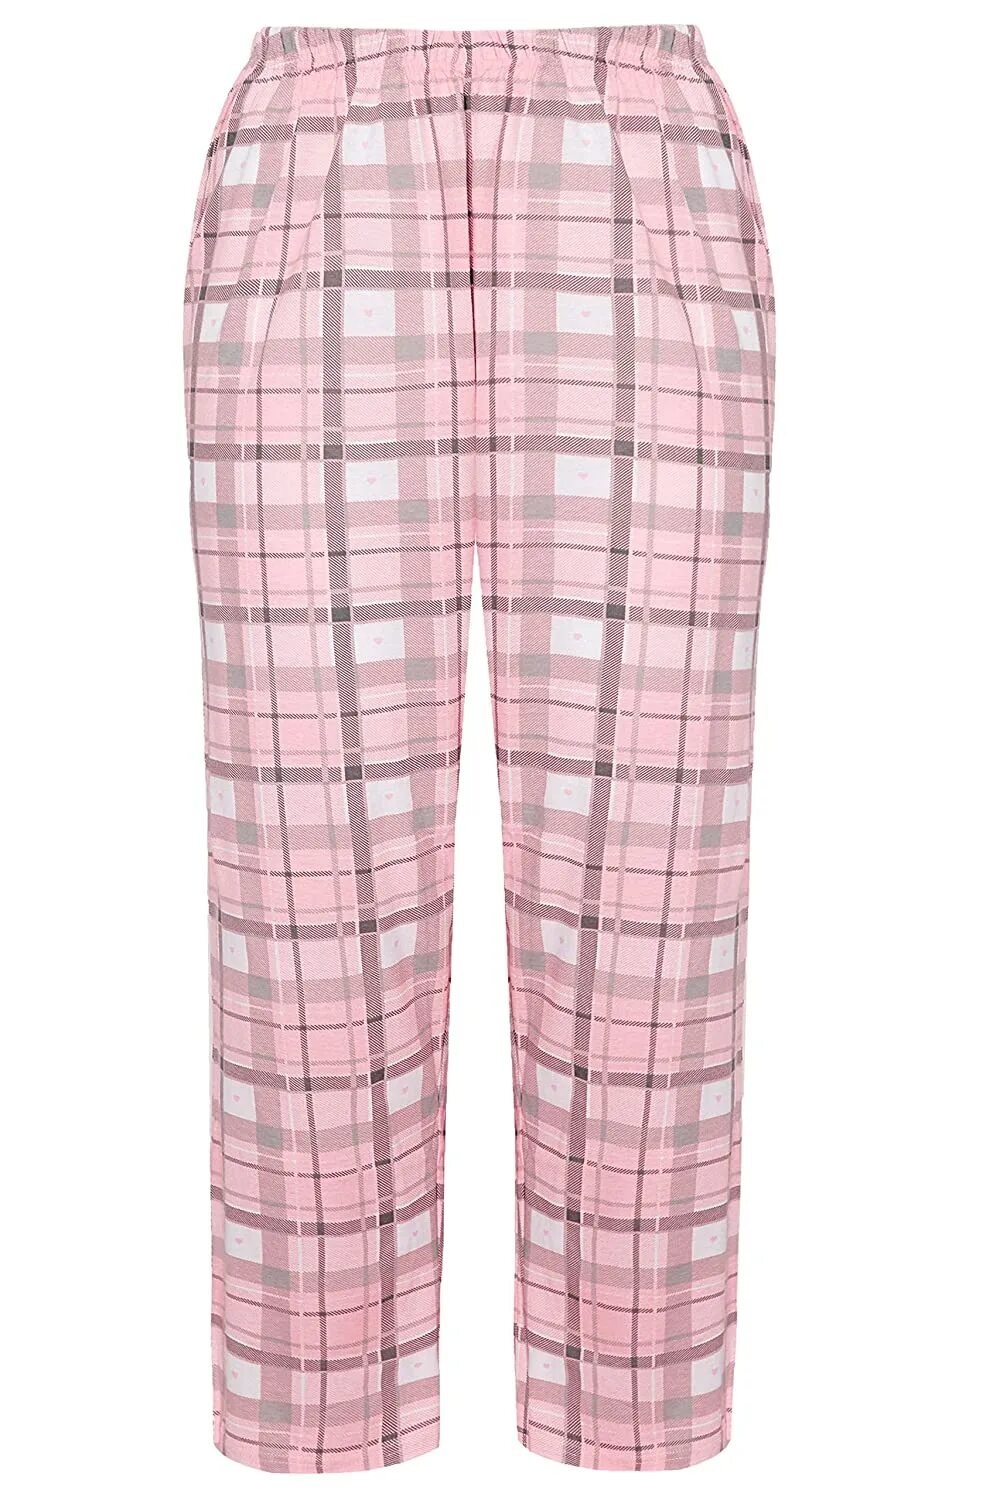 Купить пижамный брюки. Клетчатые пижамные штаны. Розовые брюки в клетку. Розовые штаны в клетку. Розовые брюки в клетку женские.